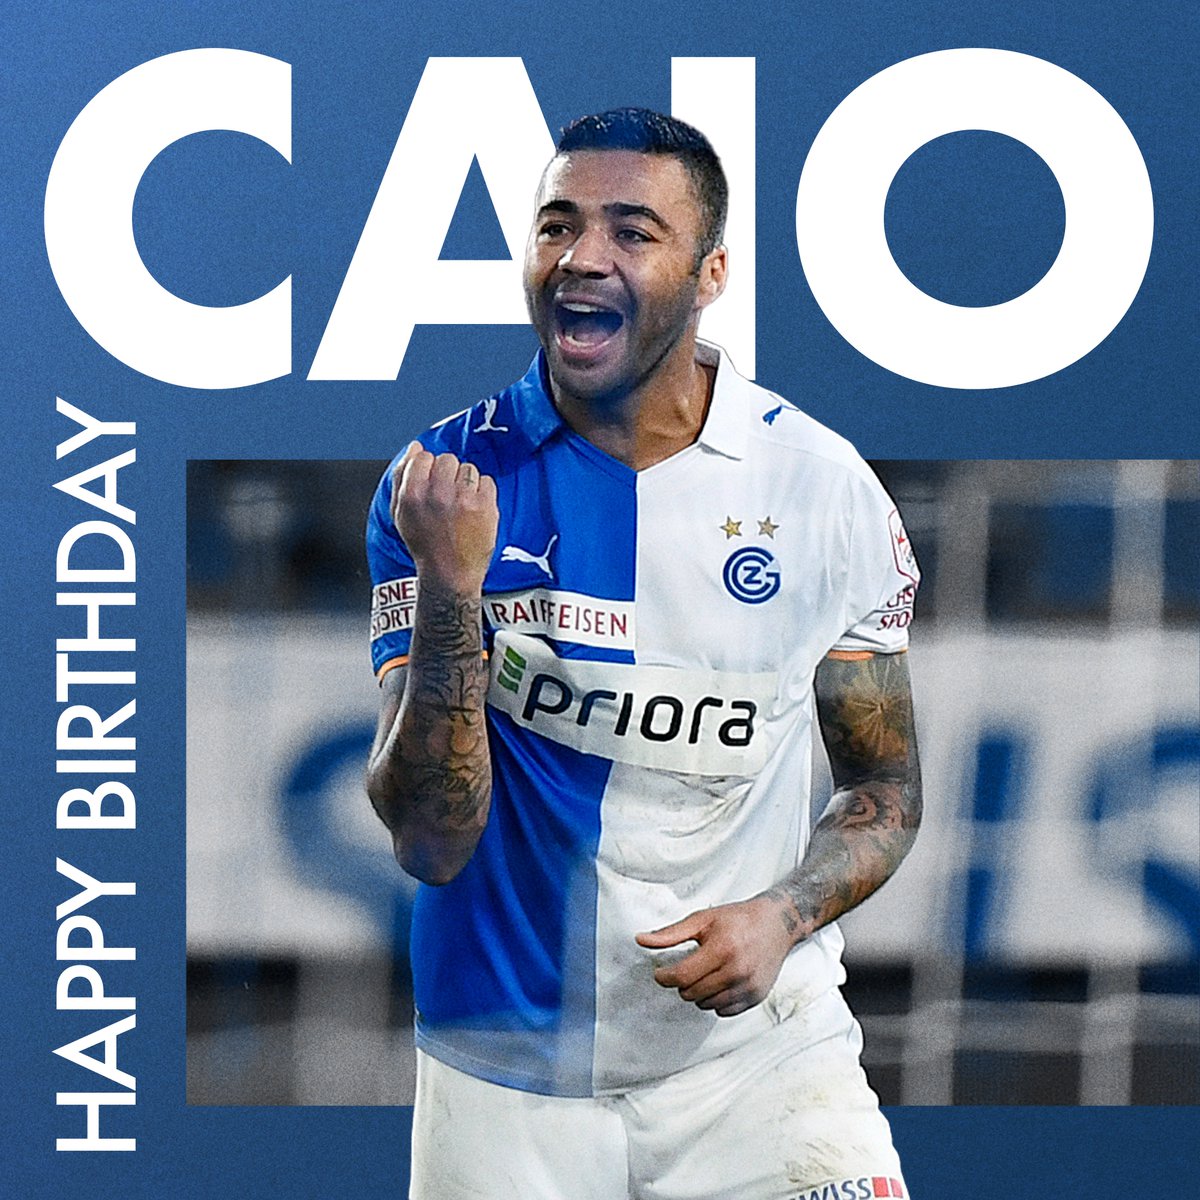 Parabéns Caio 🔵⚪

Unsere Legende feiert heute seinen Geburtstag 🫶
#gc #zürich #traditionsclub